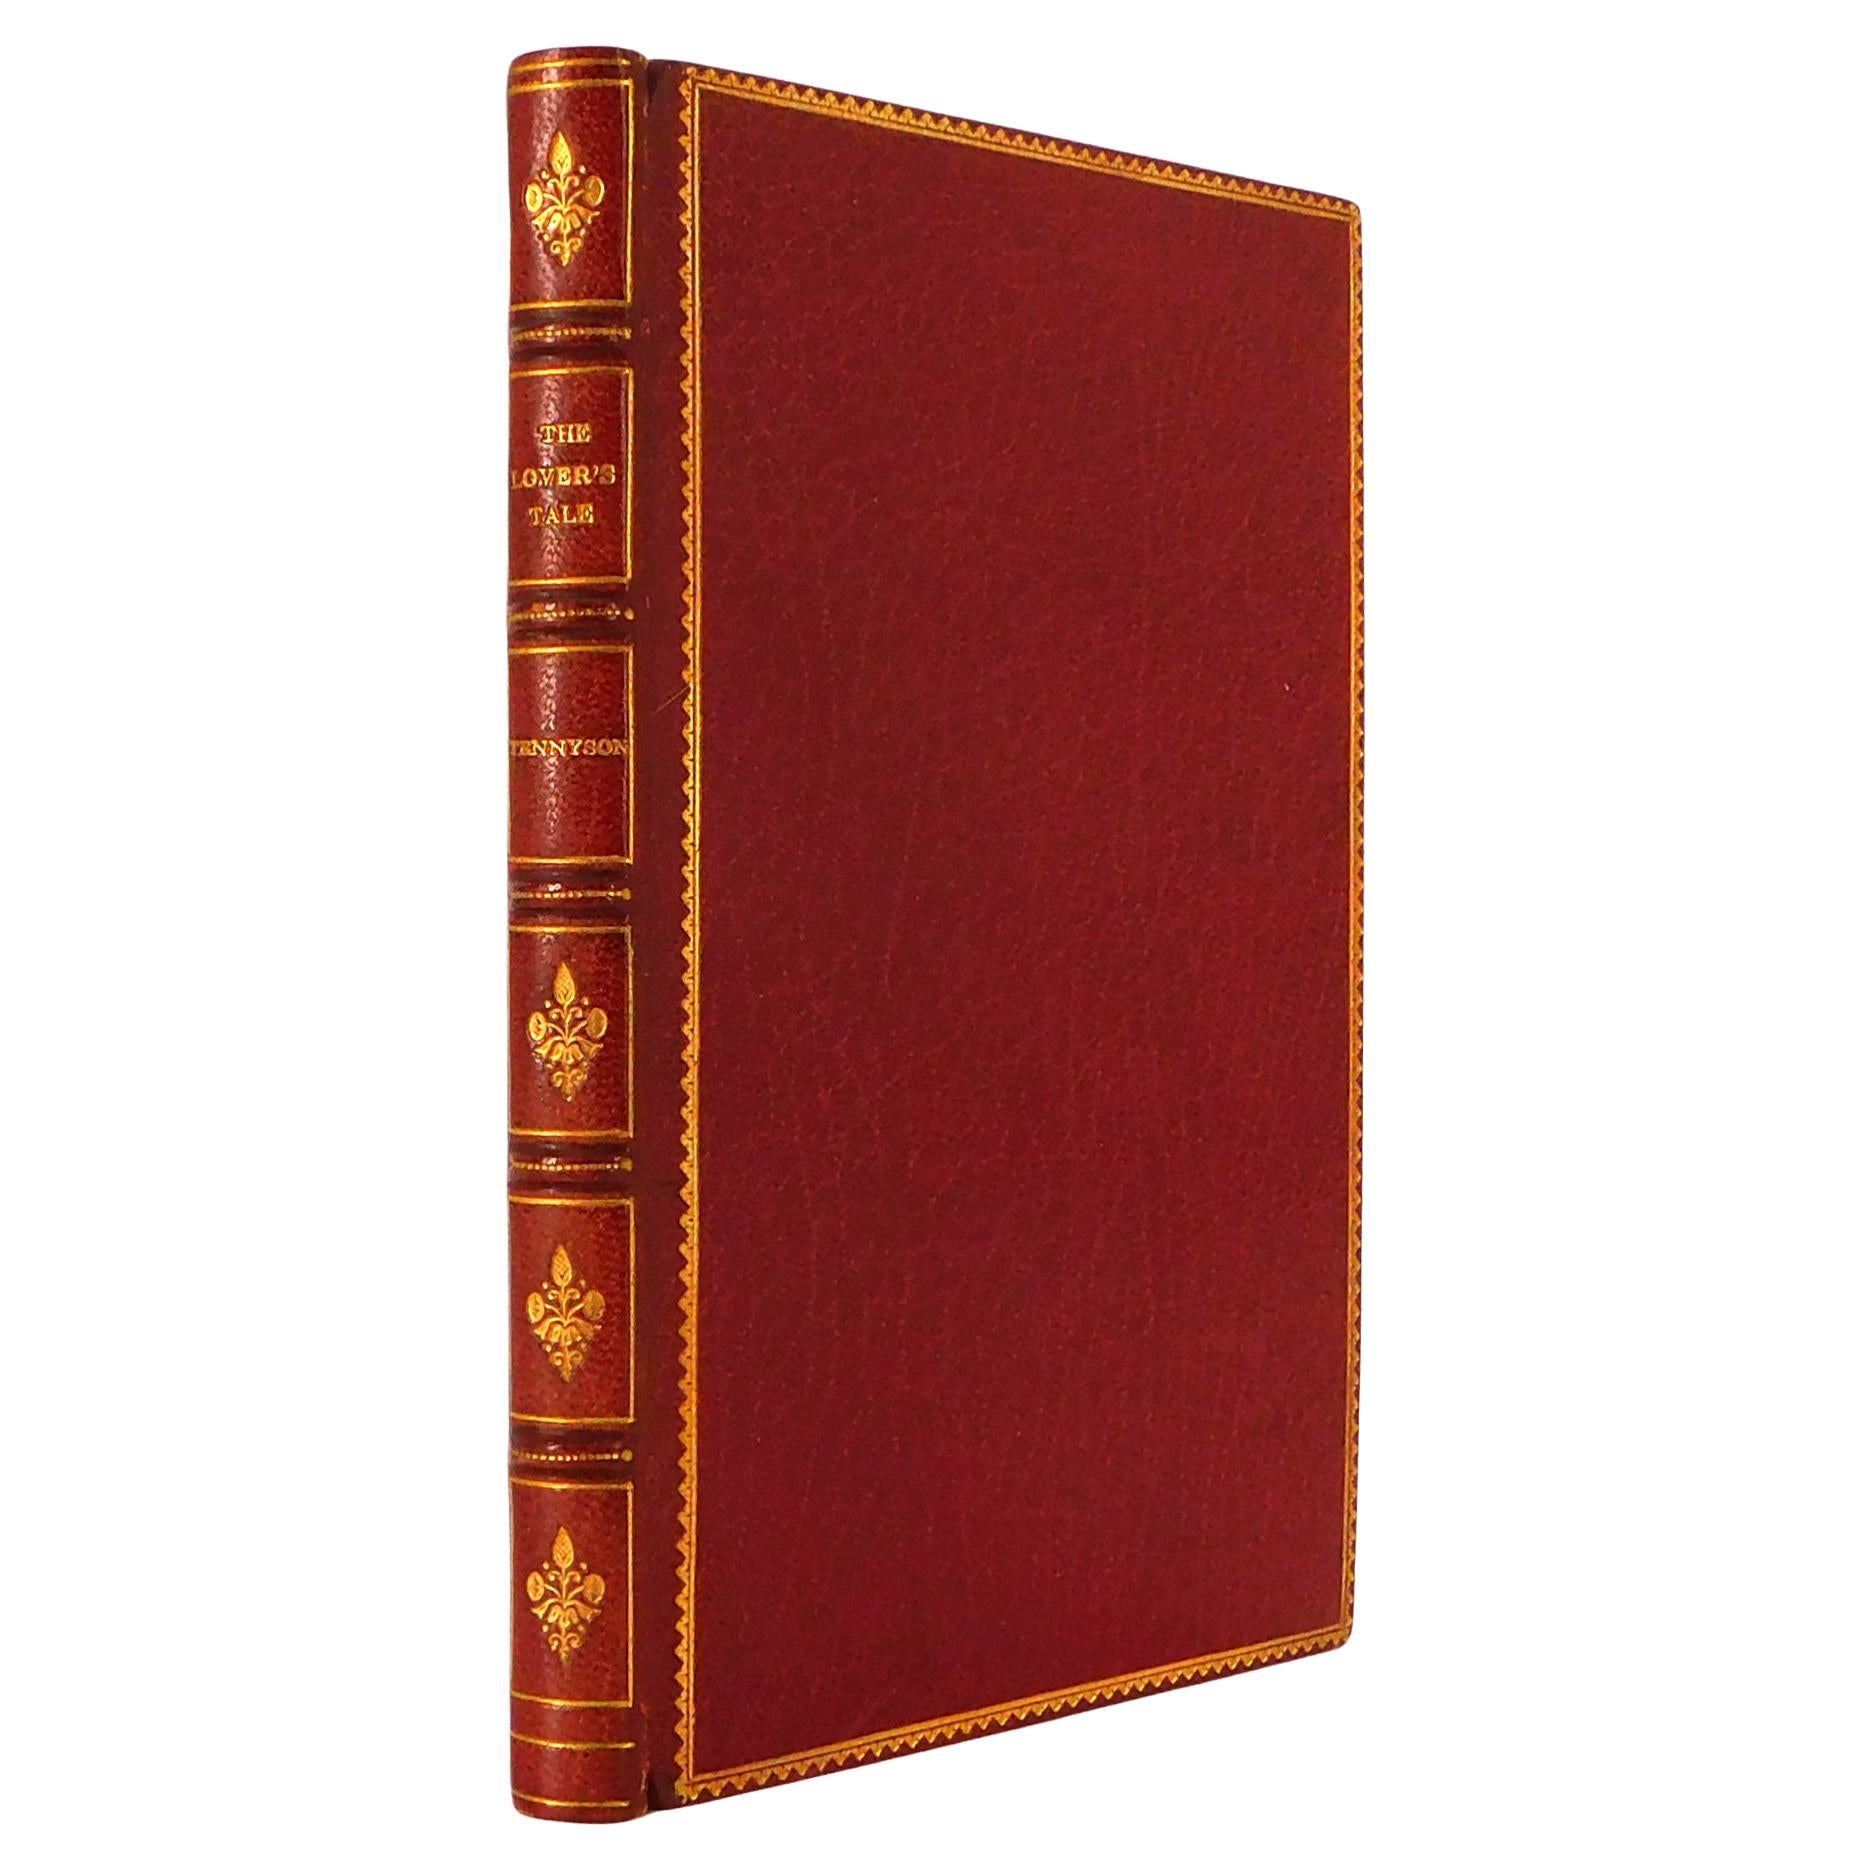 Wunderschön gebundenes Buch von Lord Alfred Tennyson: Das Liebesgeber-Gedicht